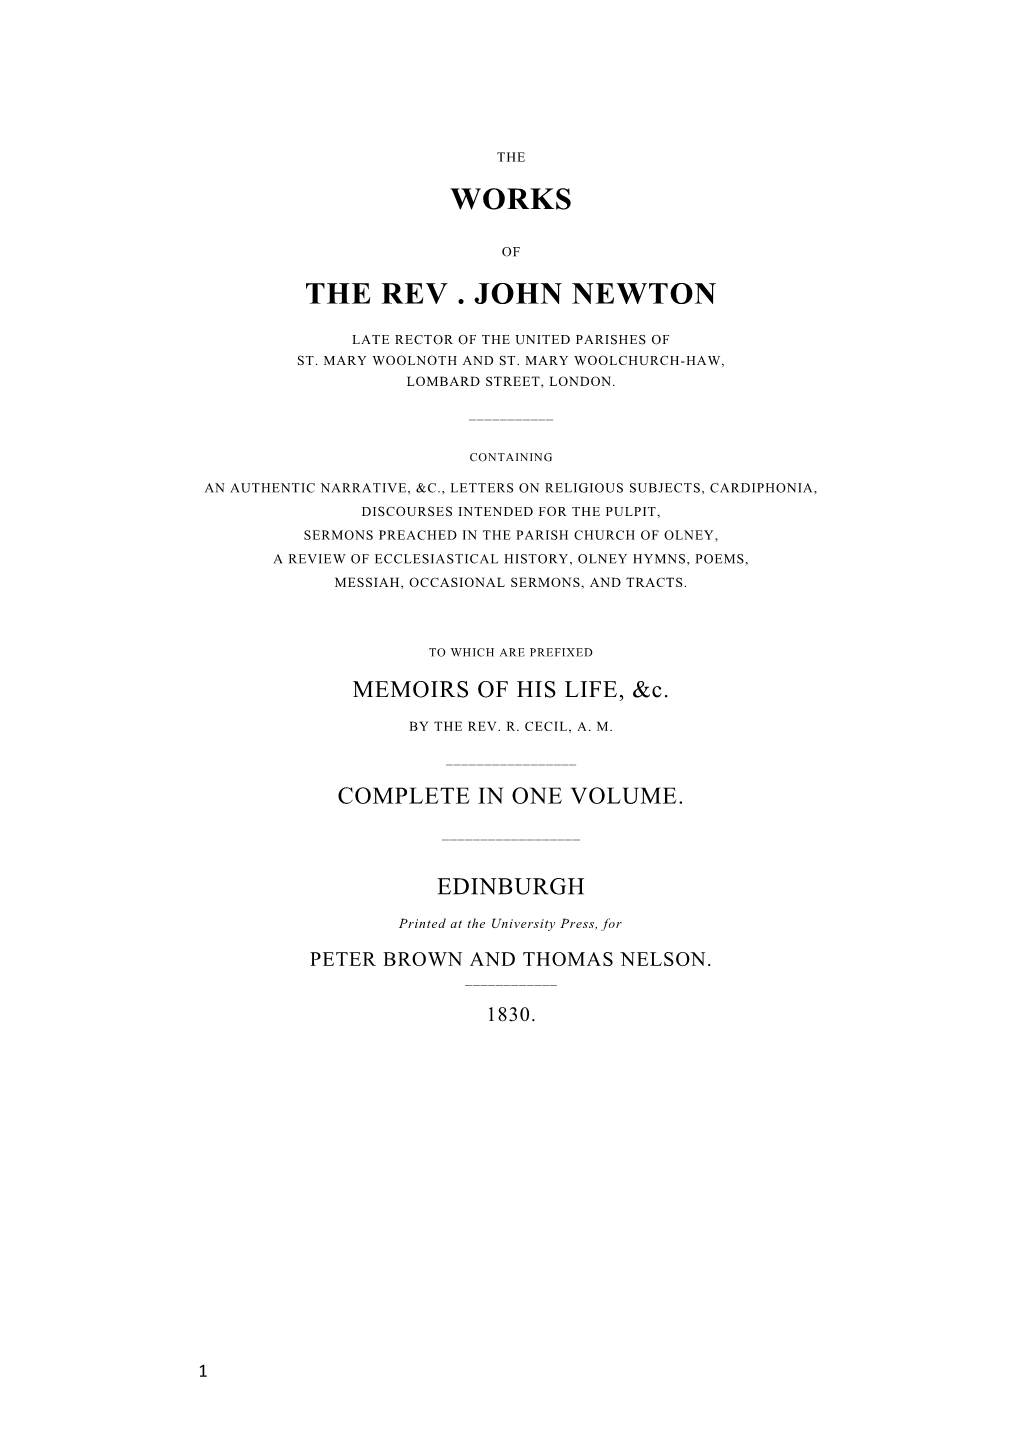 The Rev . John Newton